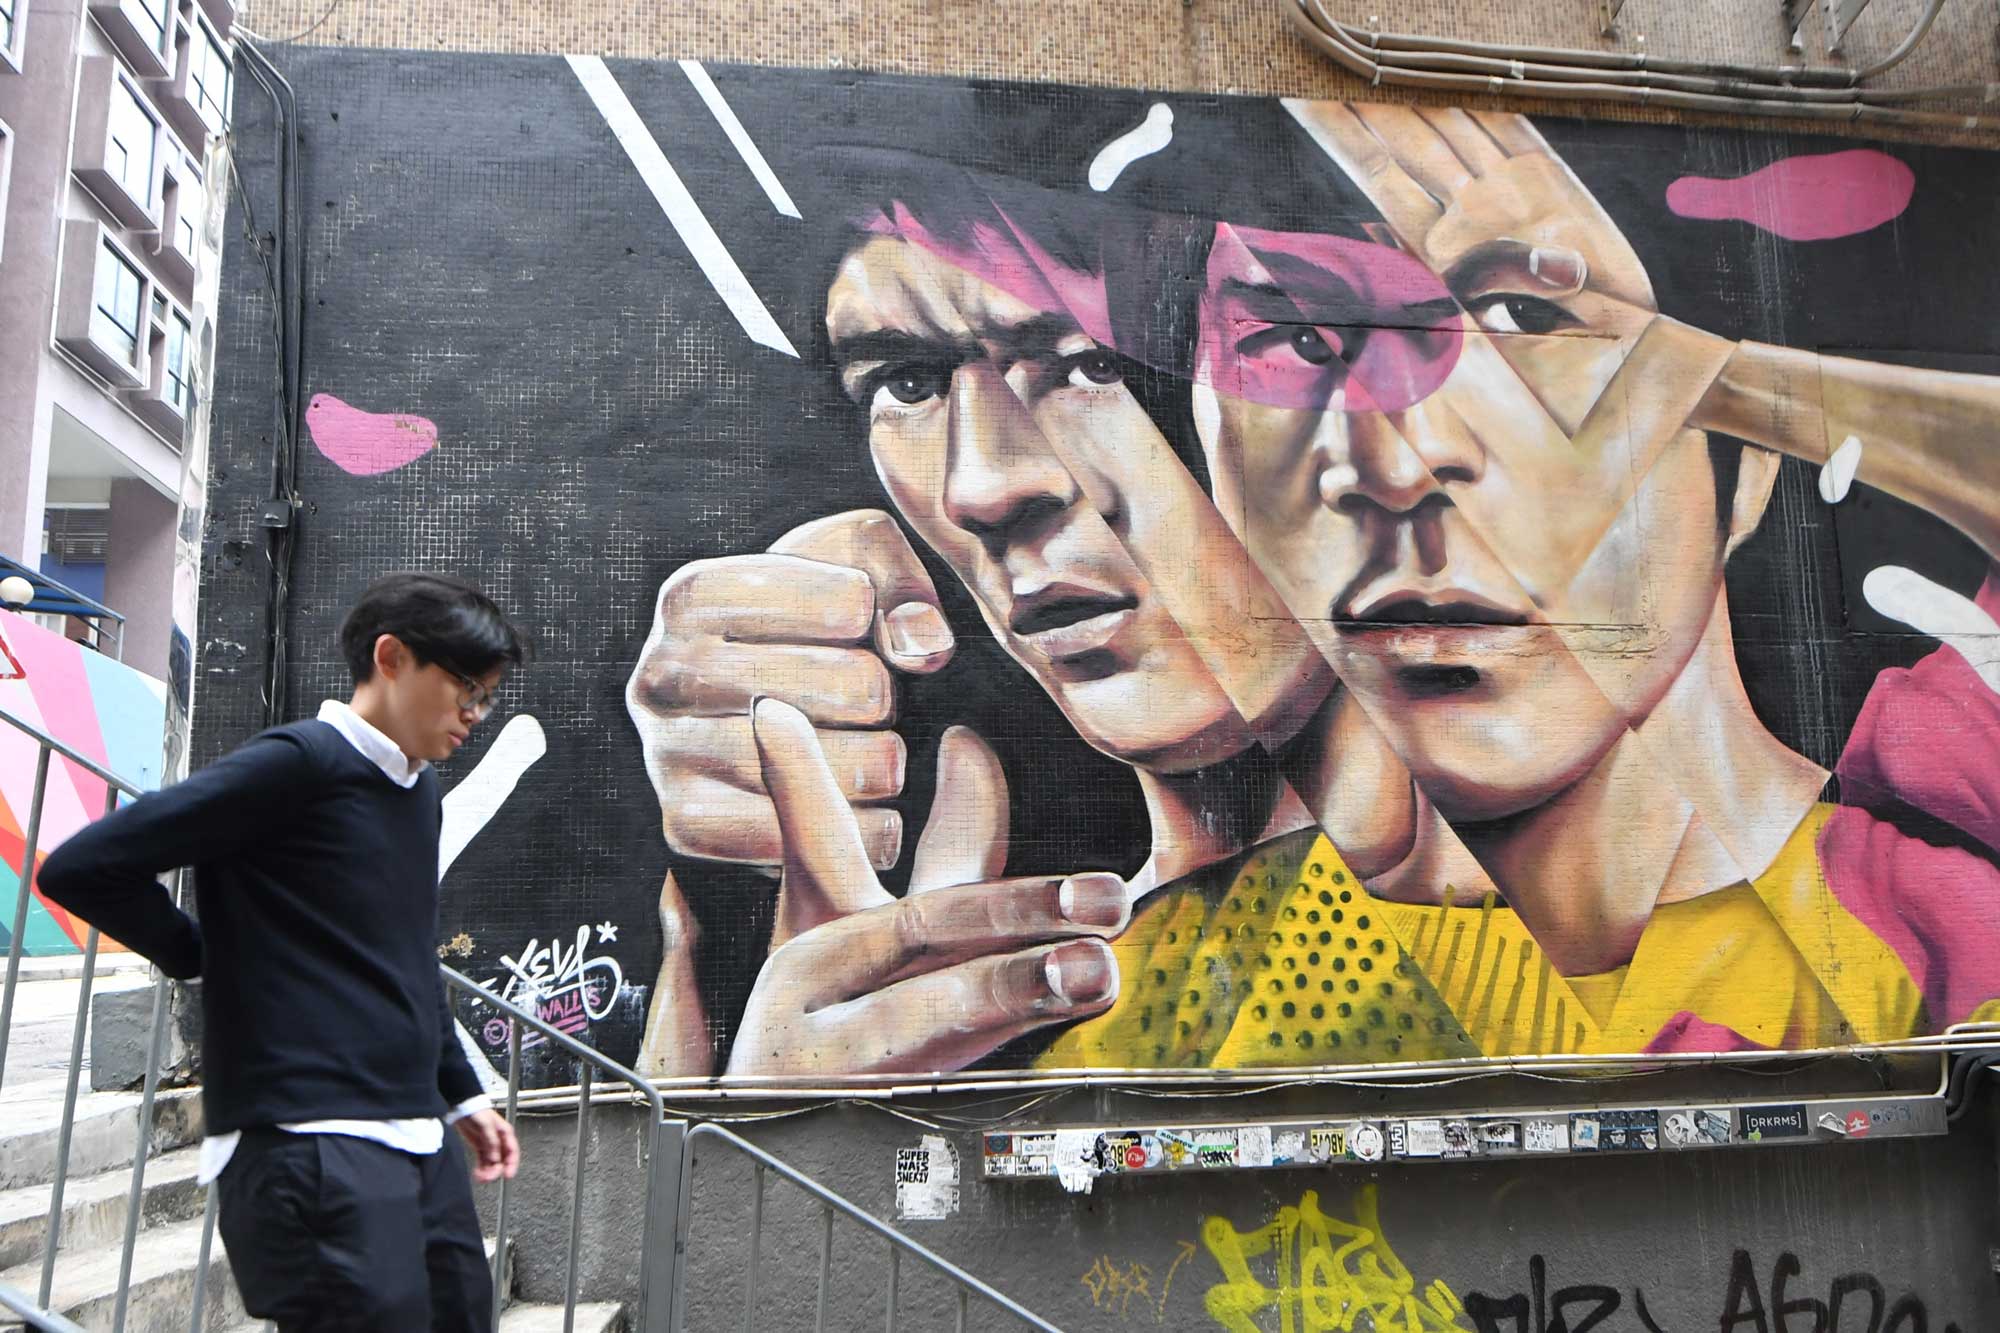 A graffiti wall art of Bruce Lee in Hong Kong